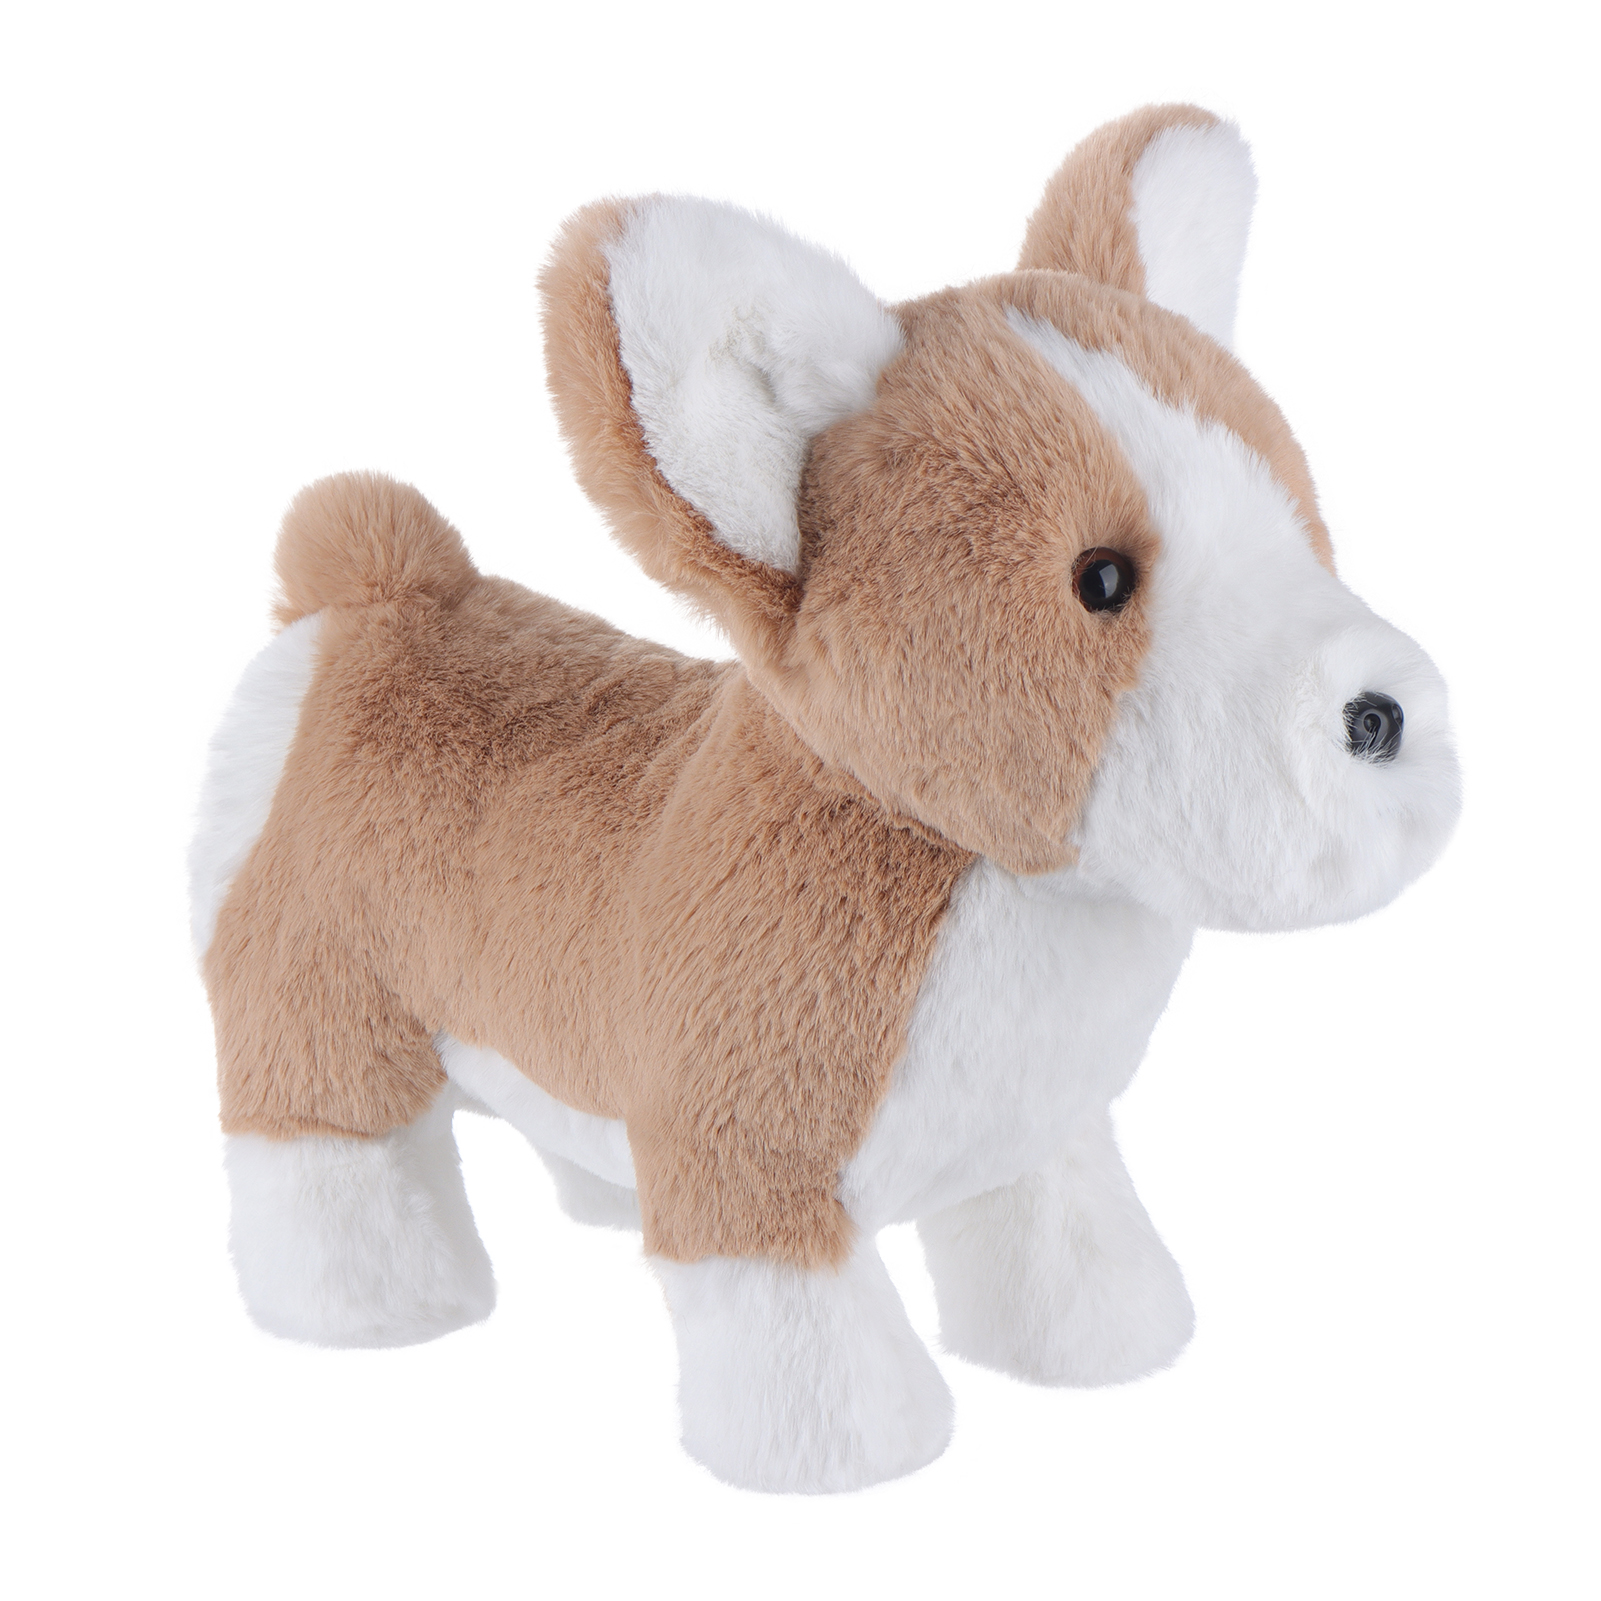 Apricot Lamb® Cheese Corgi Dog Stuffed Animal Soft Plush Toys